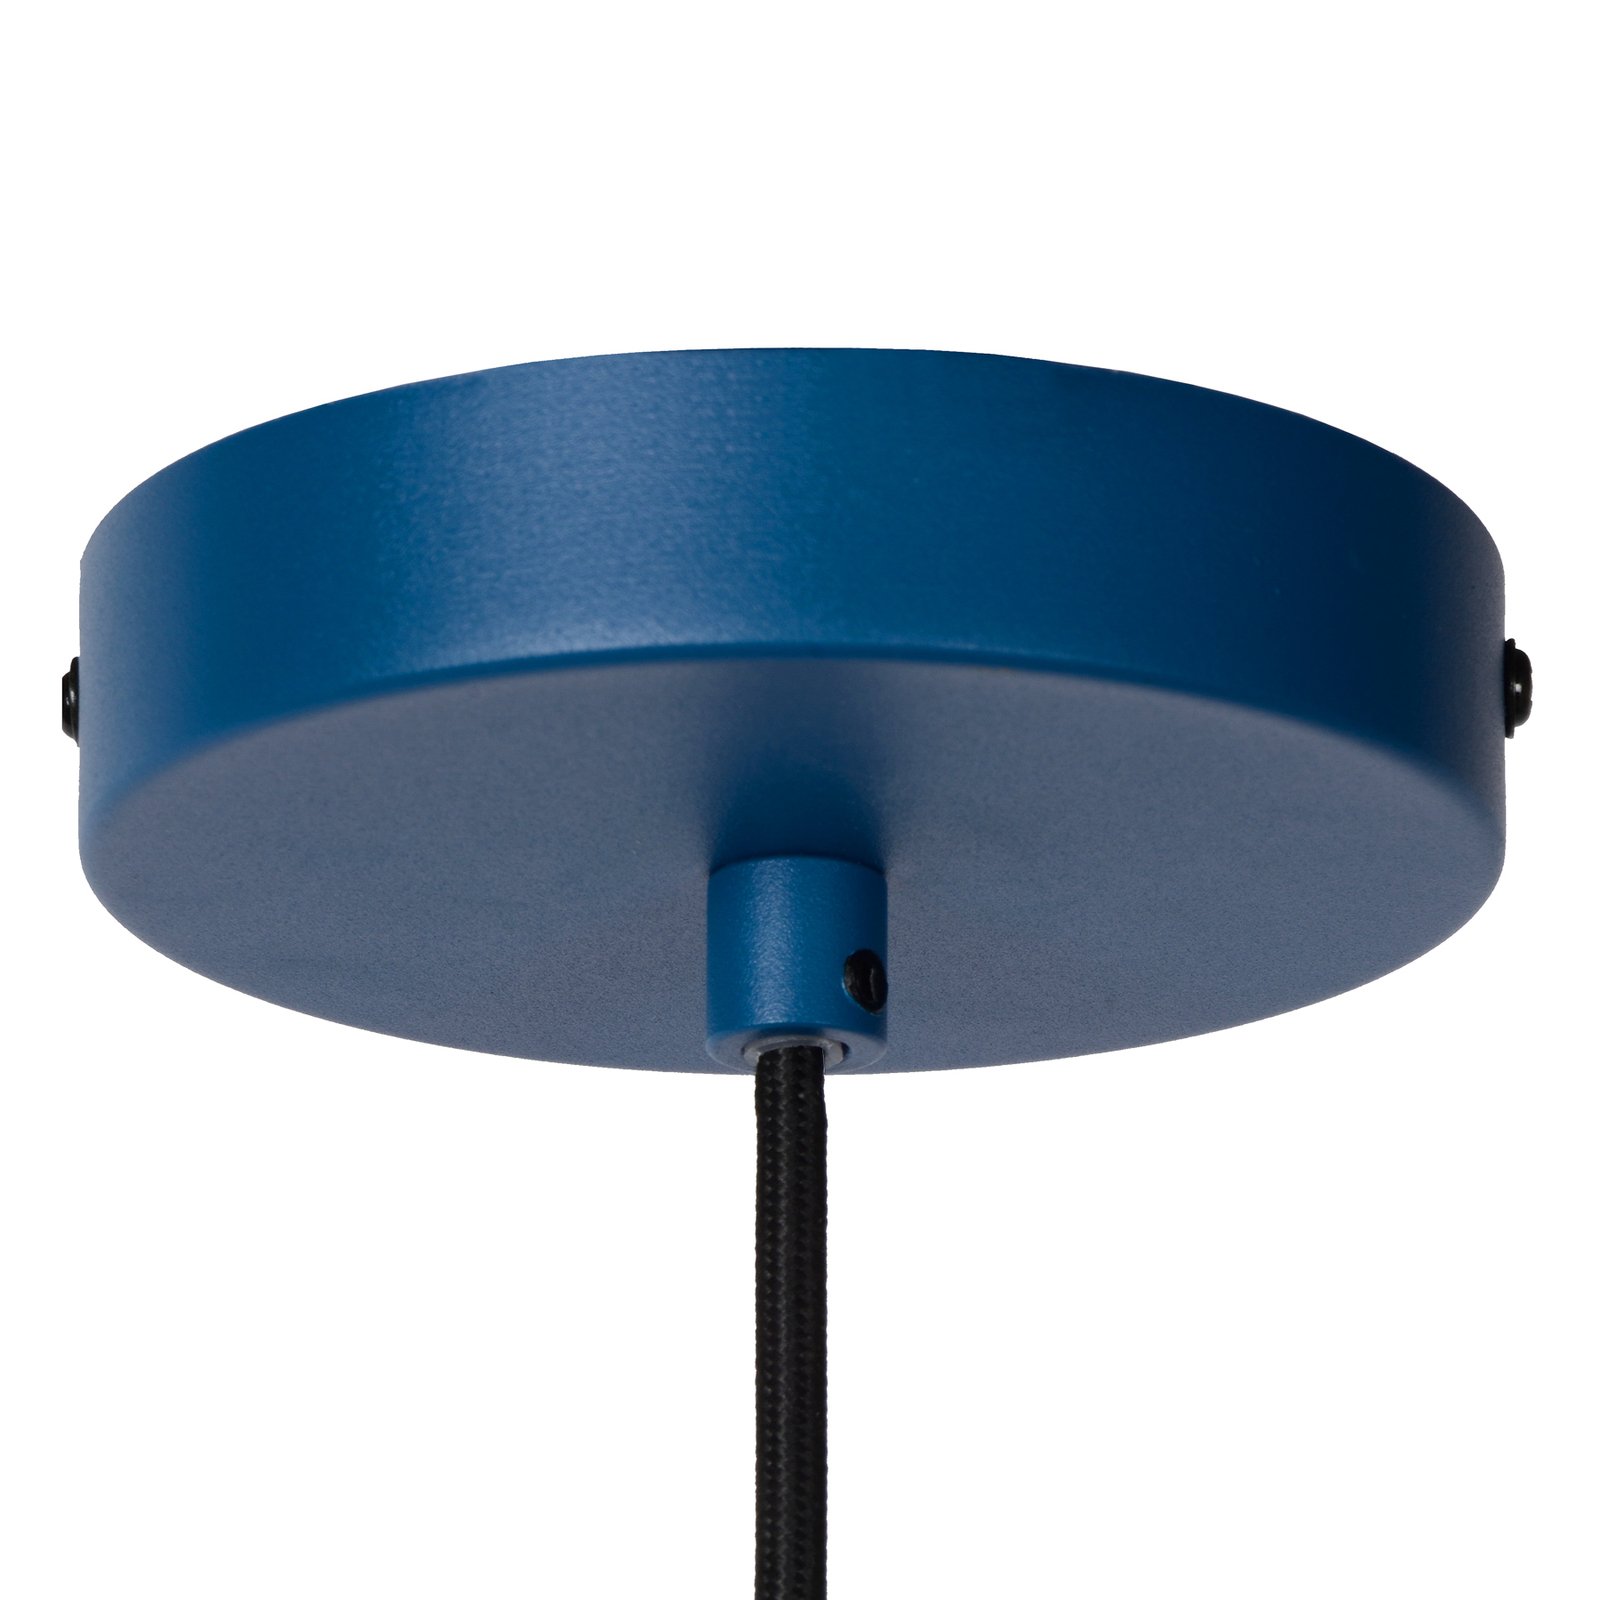 Siemon lampă suspendată din oțel, Ø 40cm, albastru